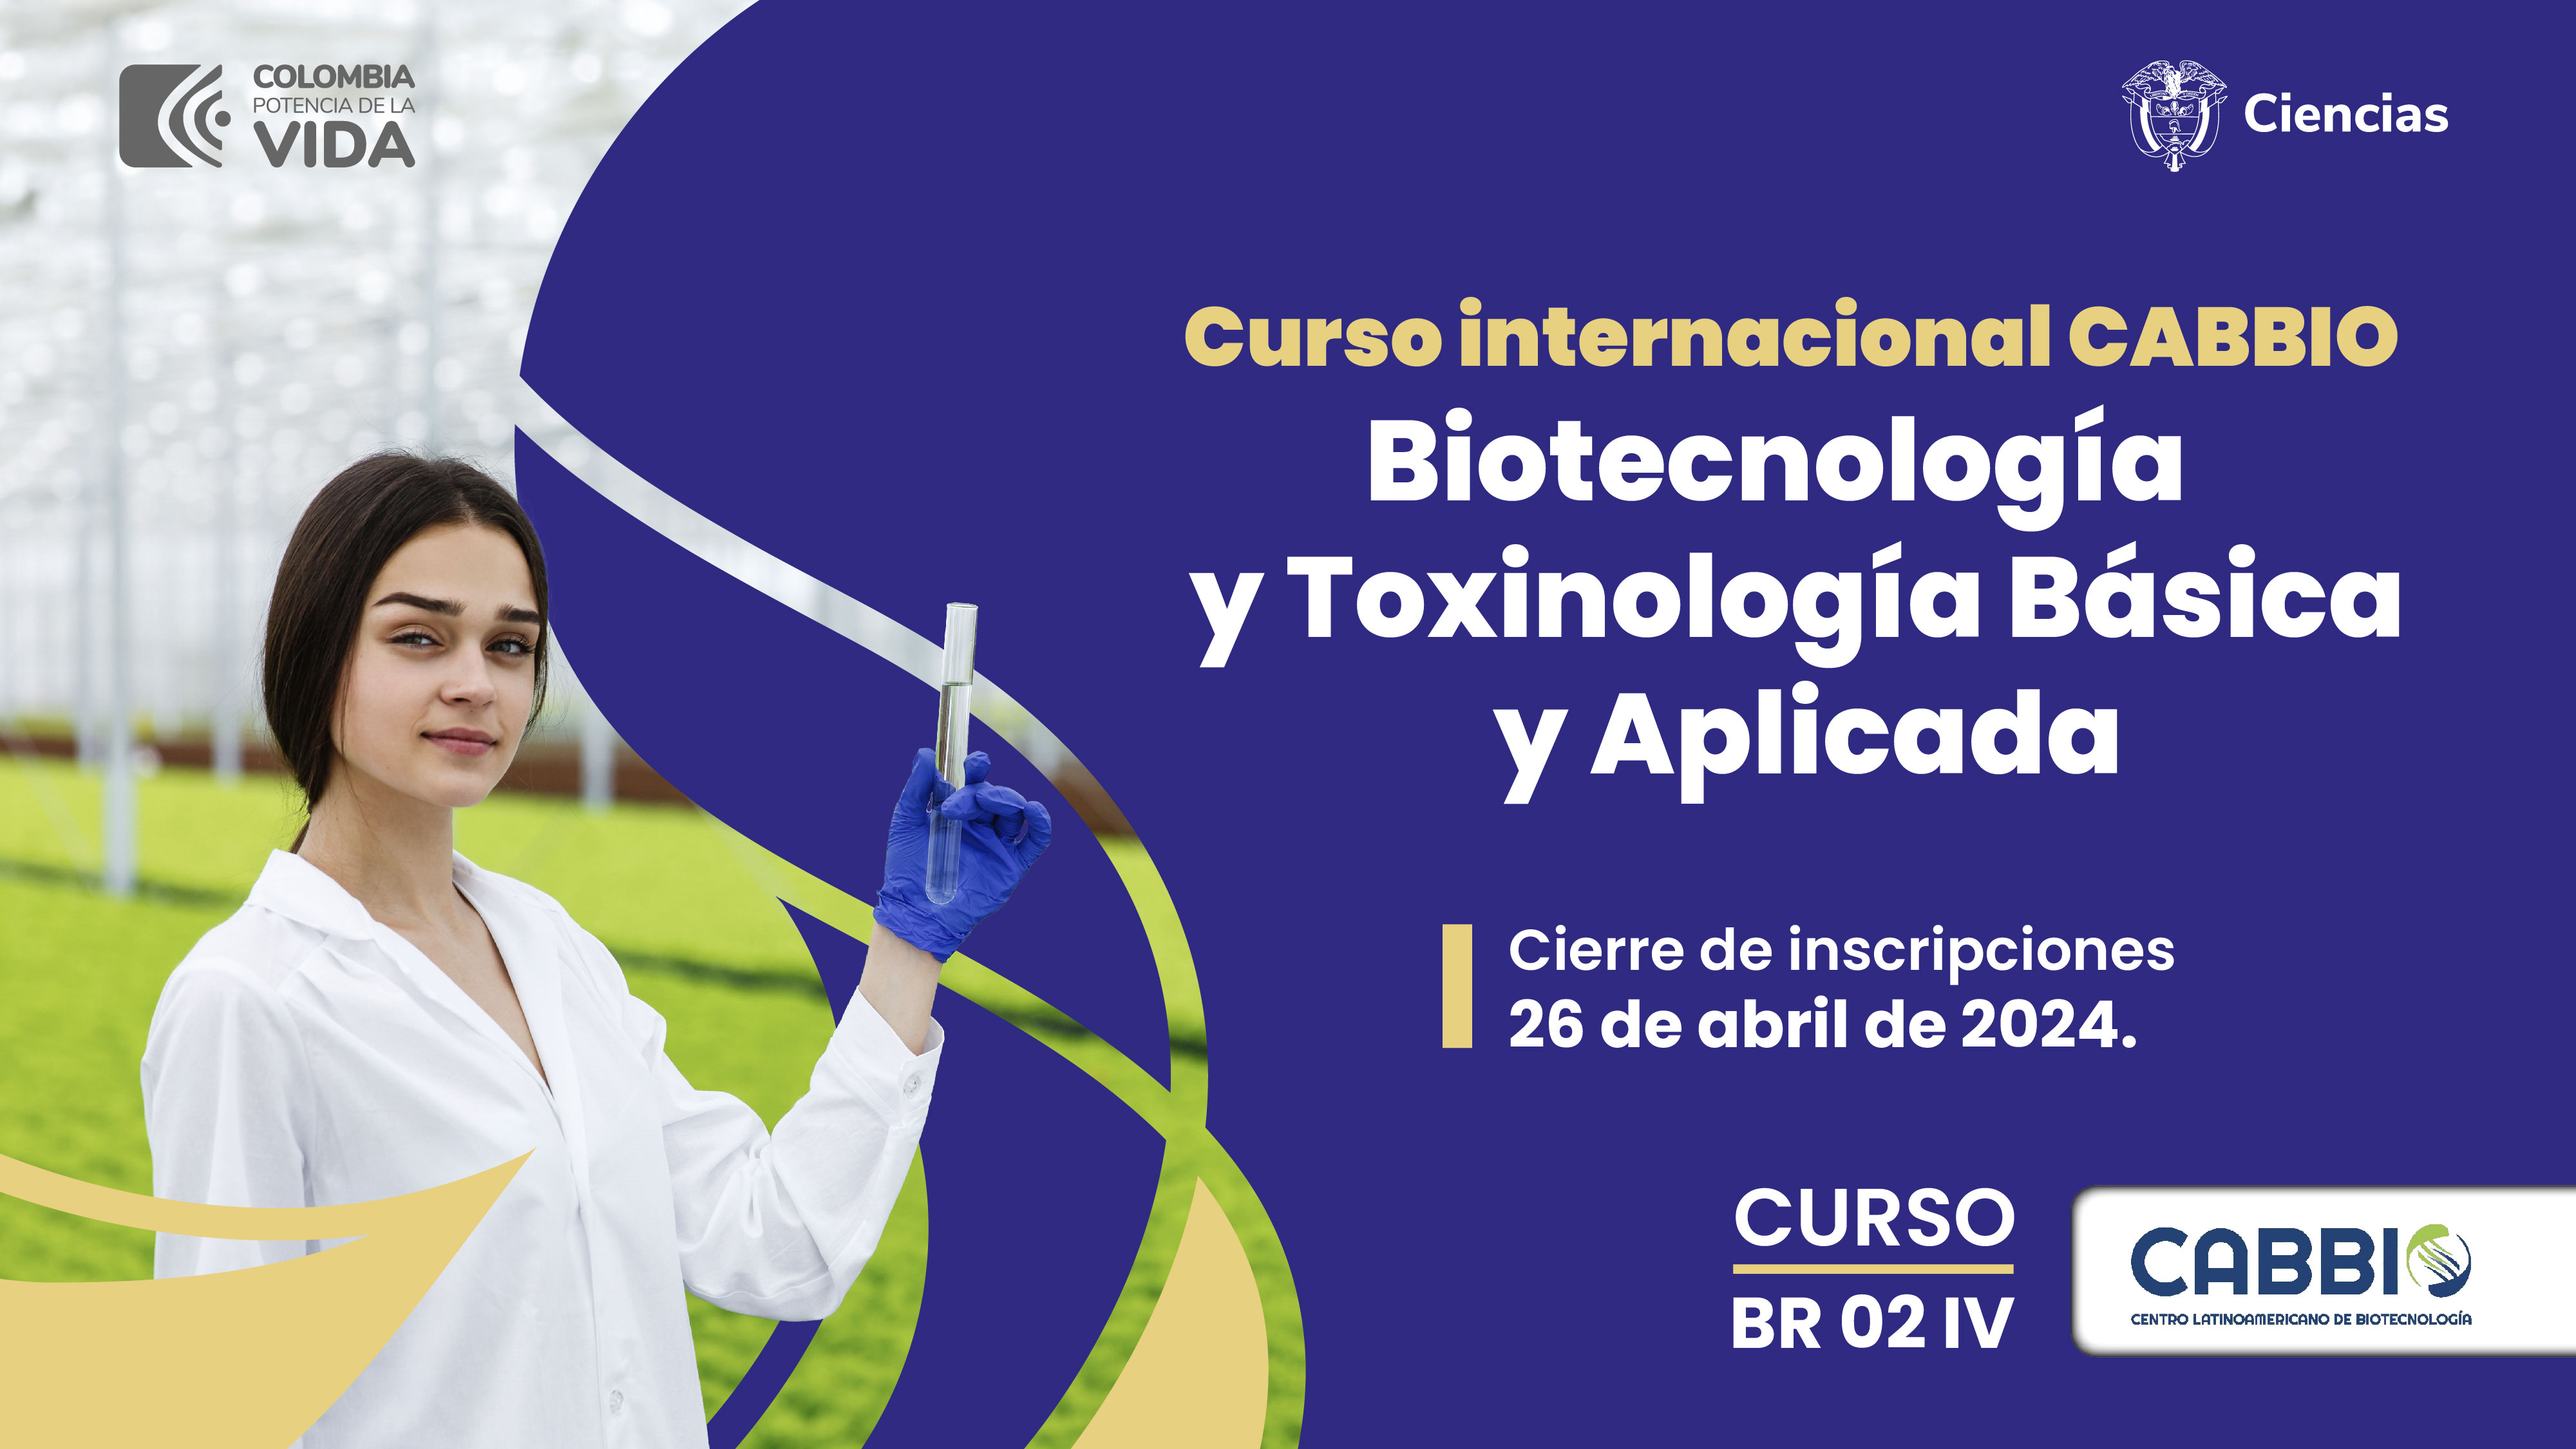 Nuevo curso virtual de Biotecnología